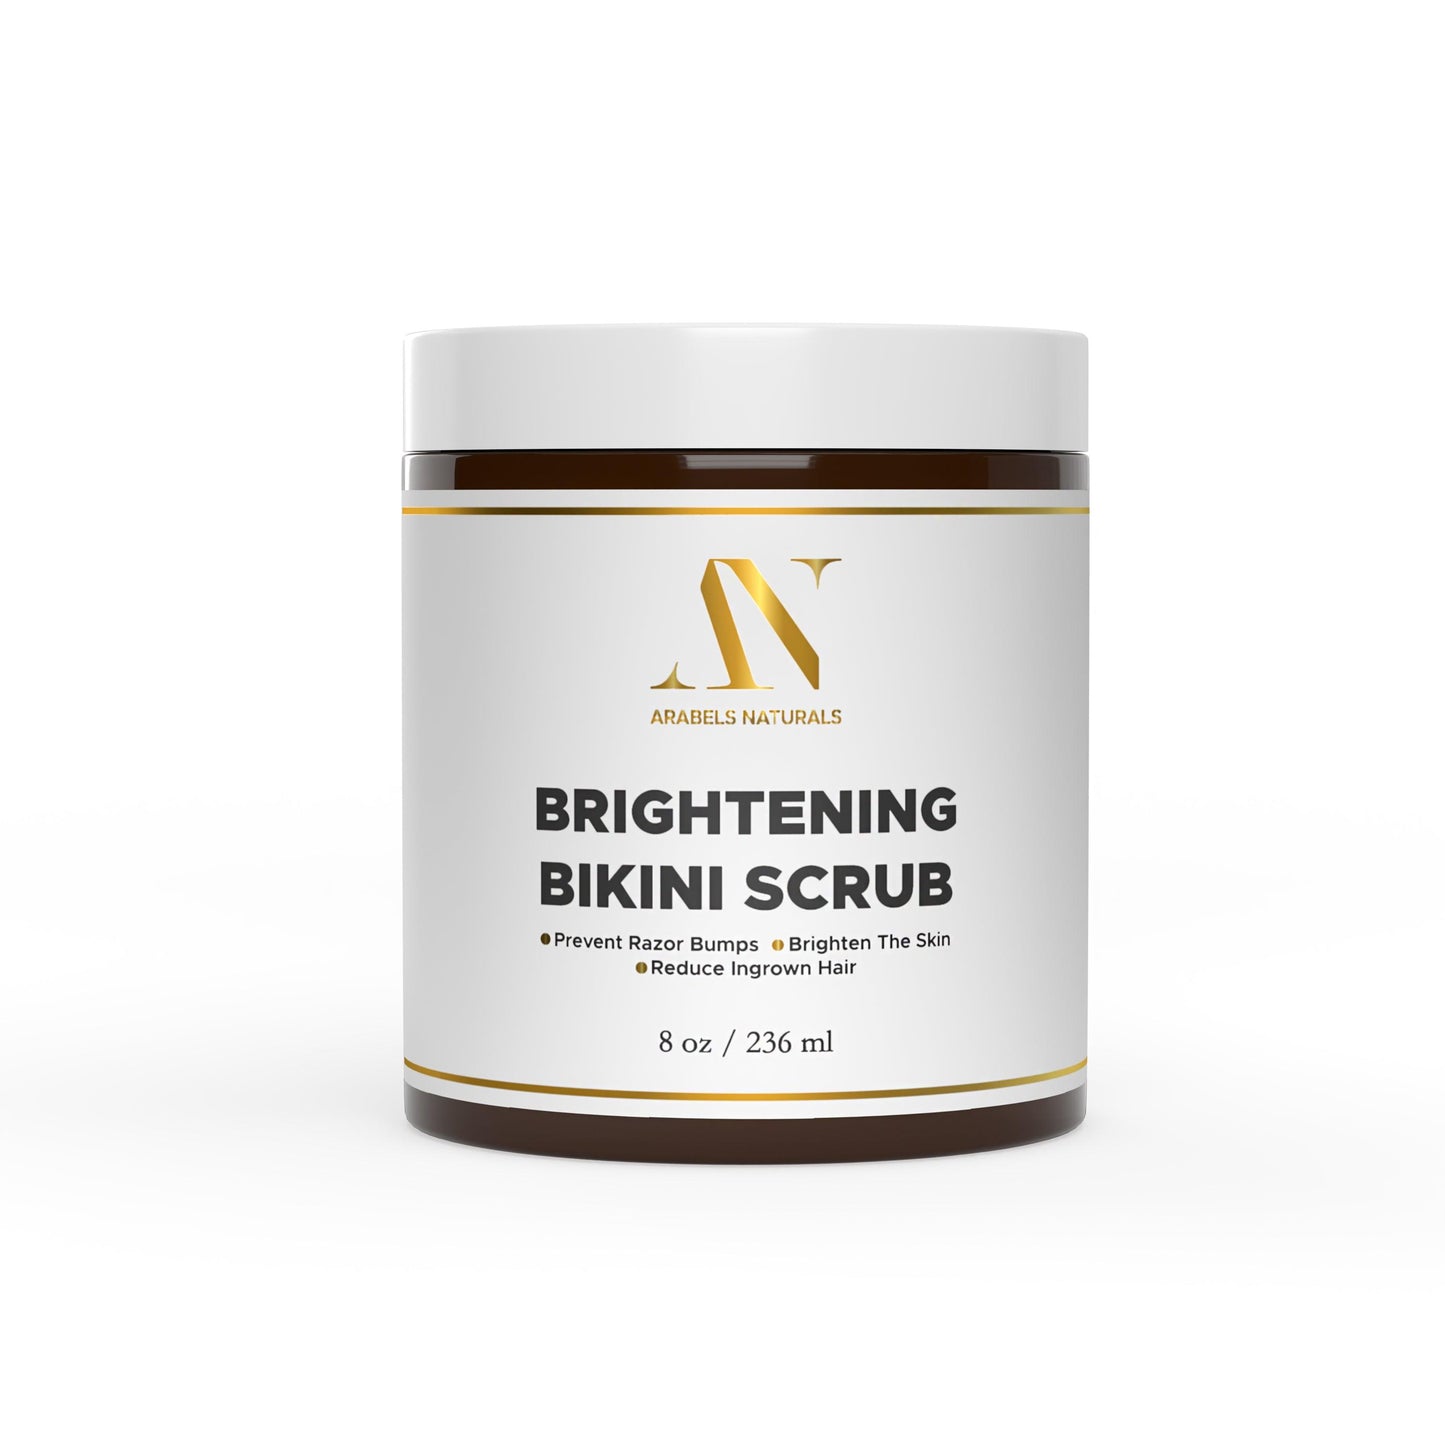 Brightening Bikini Scrub for Ingrown Hair